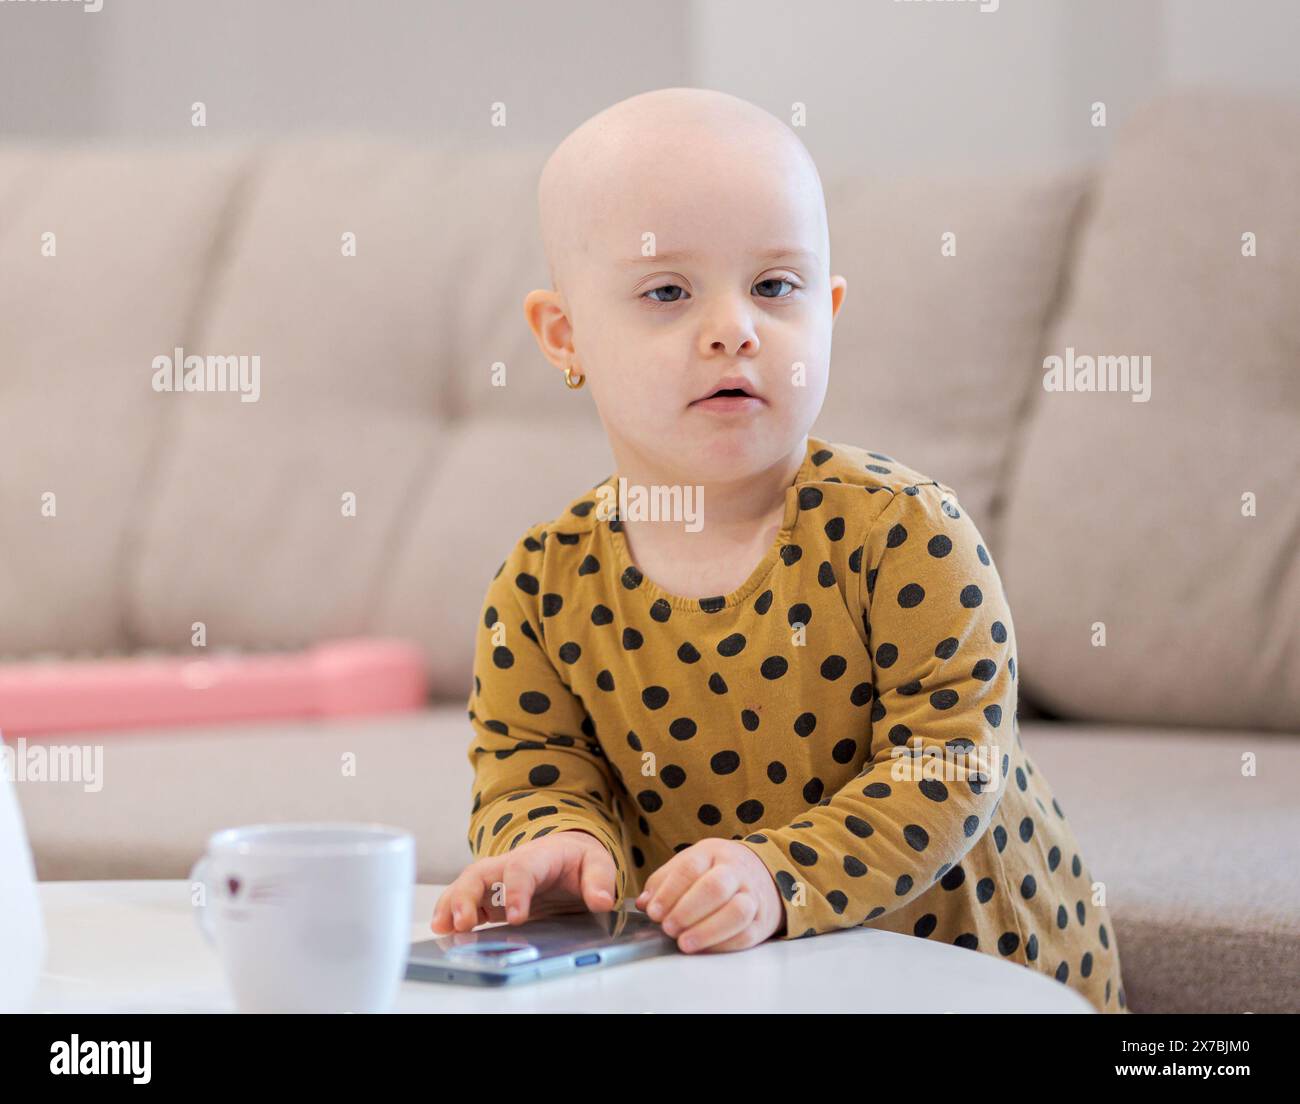 Bébé fille avec cancer et perte de cheveux due à la chimiothérapie jouant avec un smartphone Banque D'Images